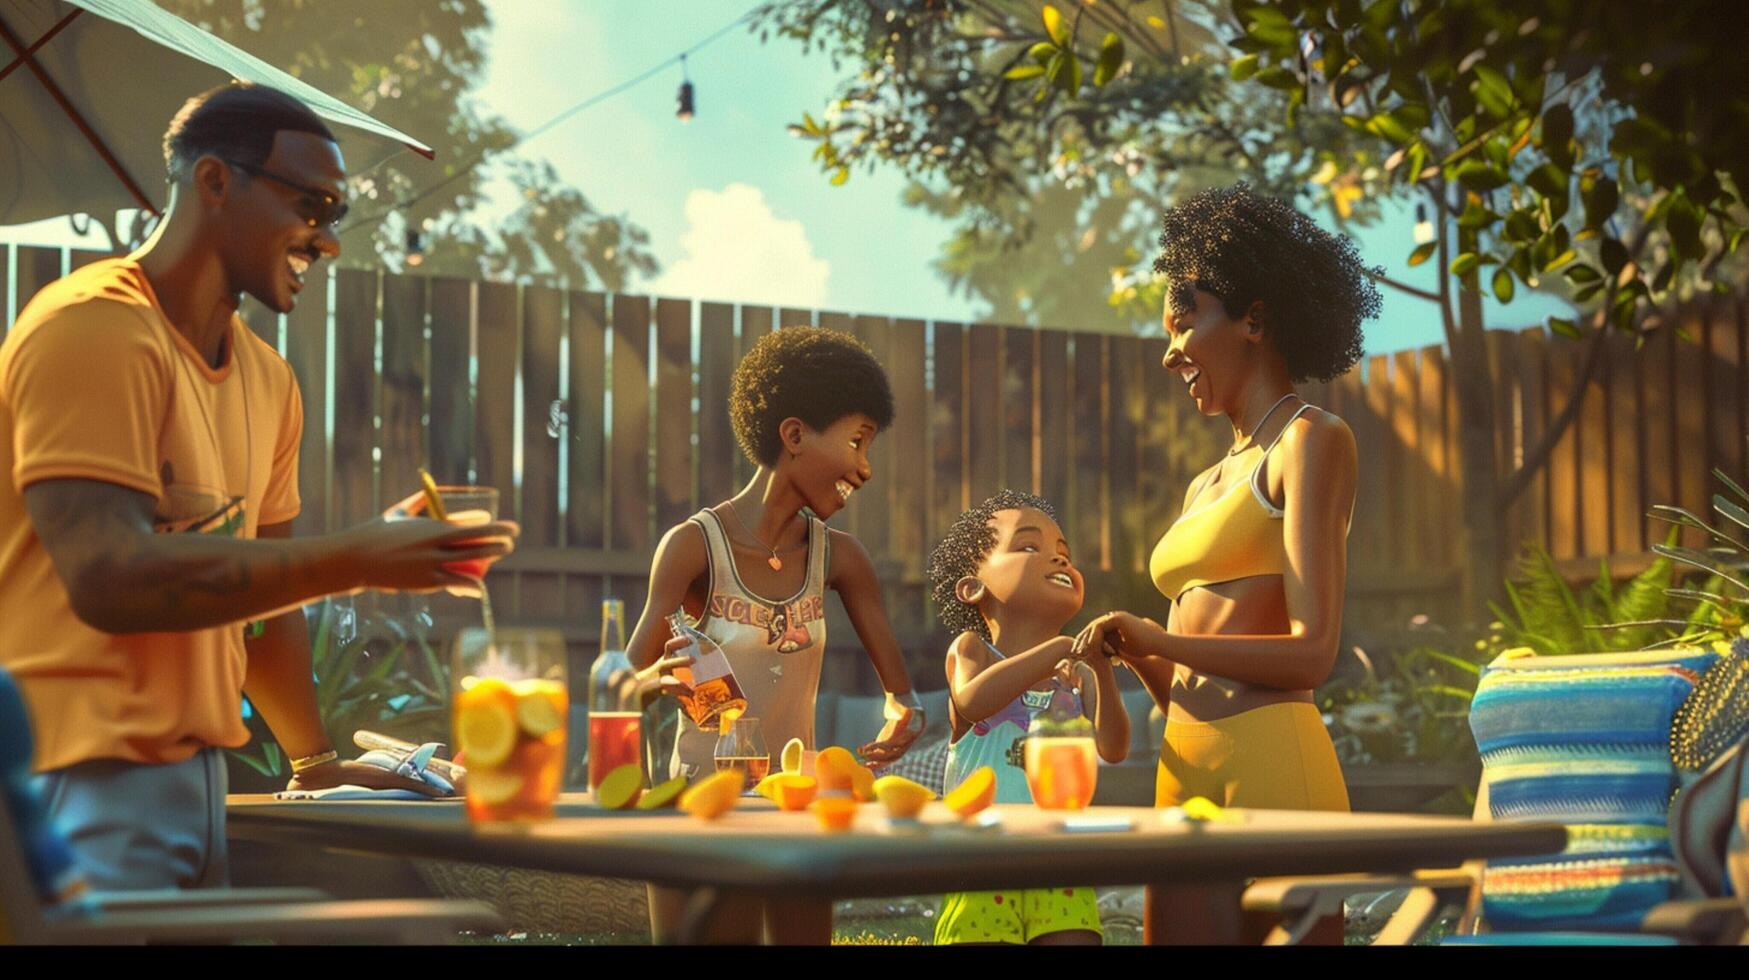 svart familj njuter sommar tillsammans på bakgård foto